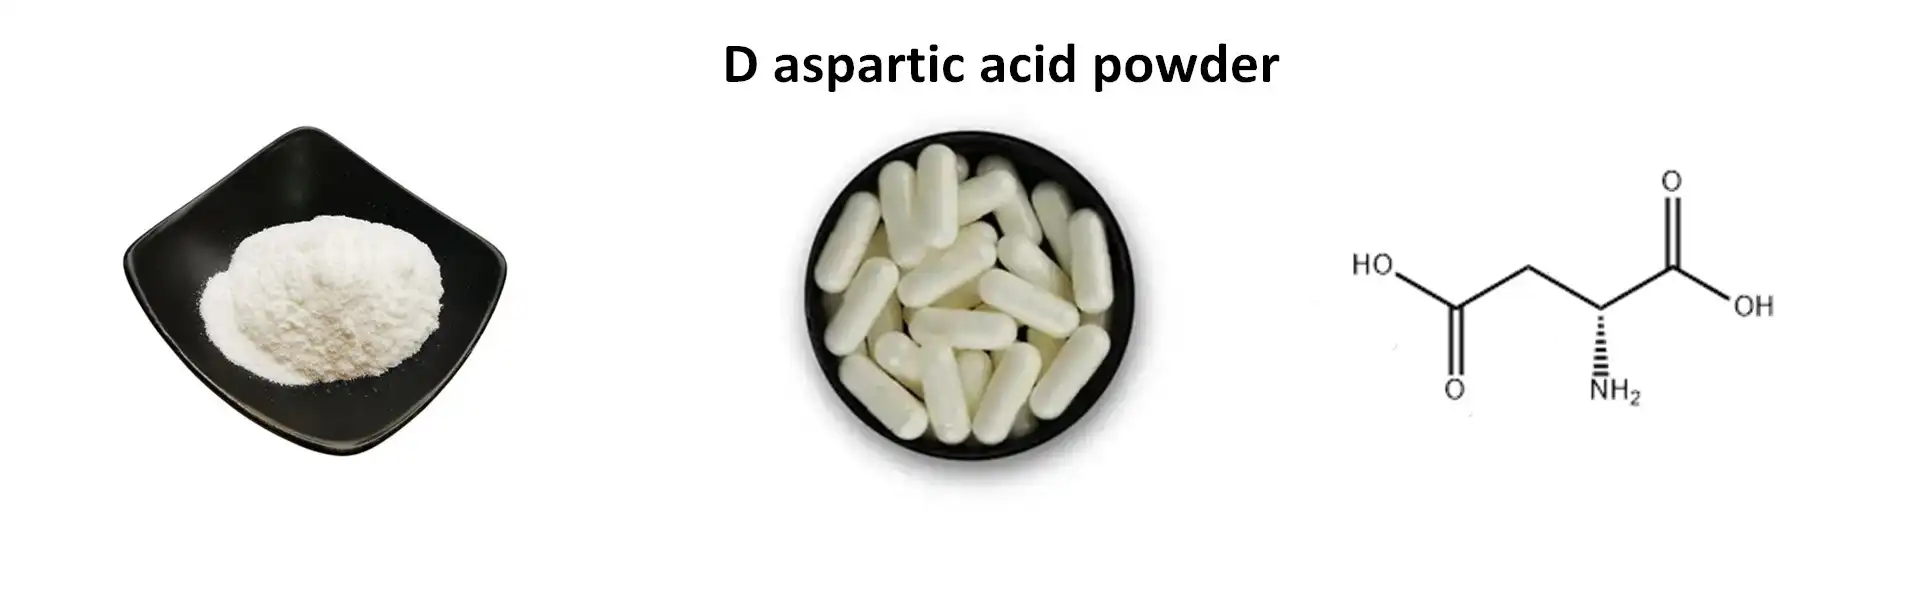 D aspartic acid